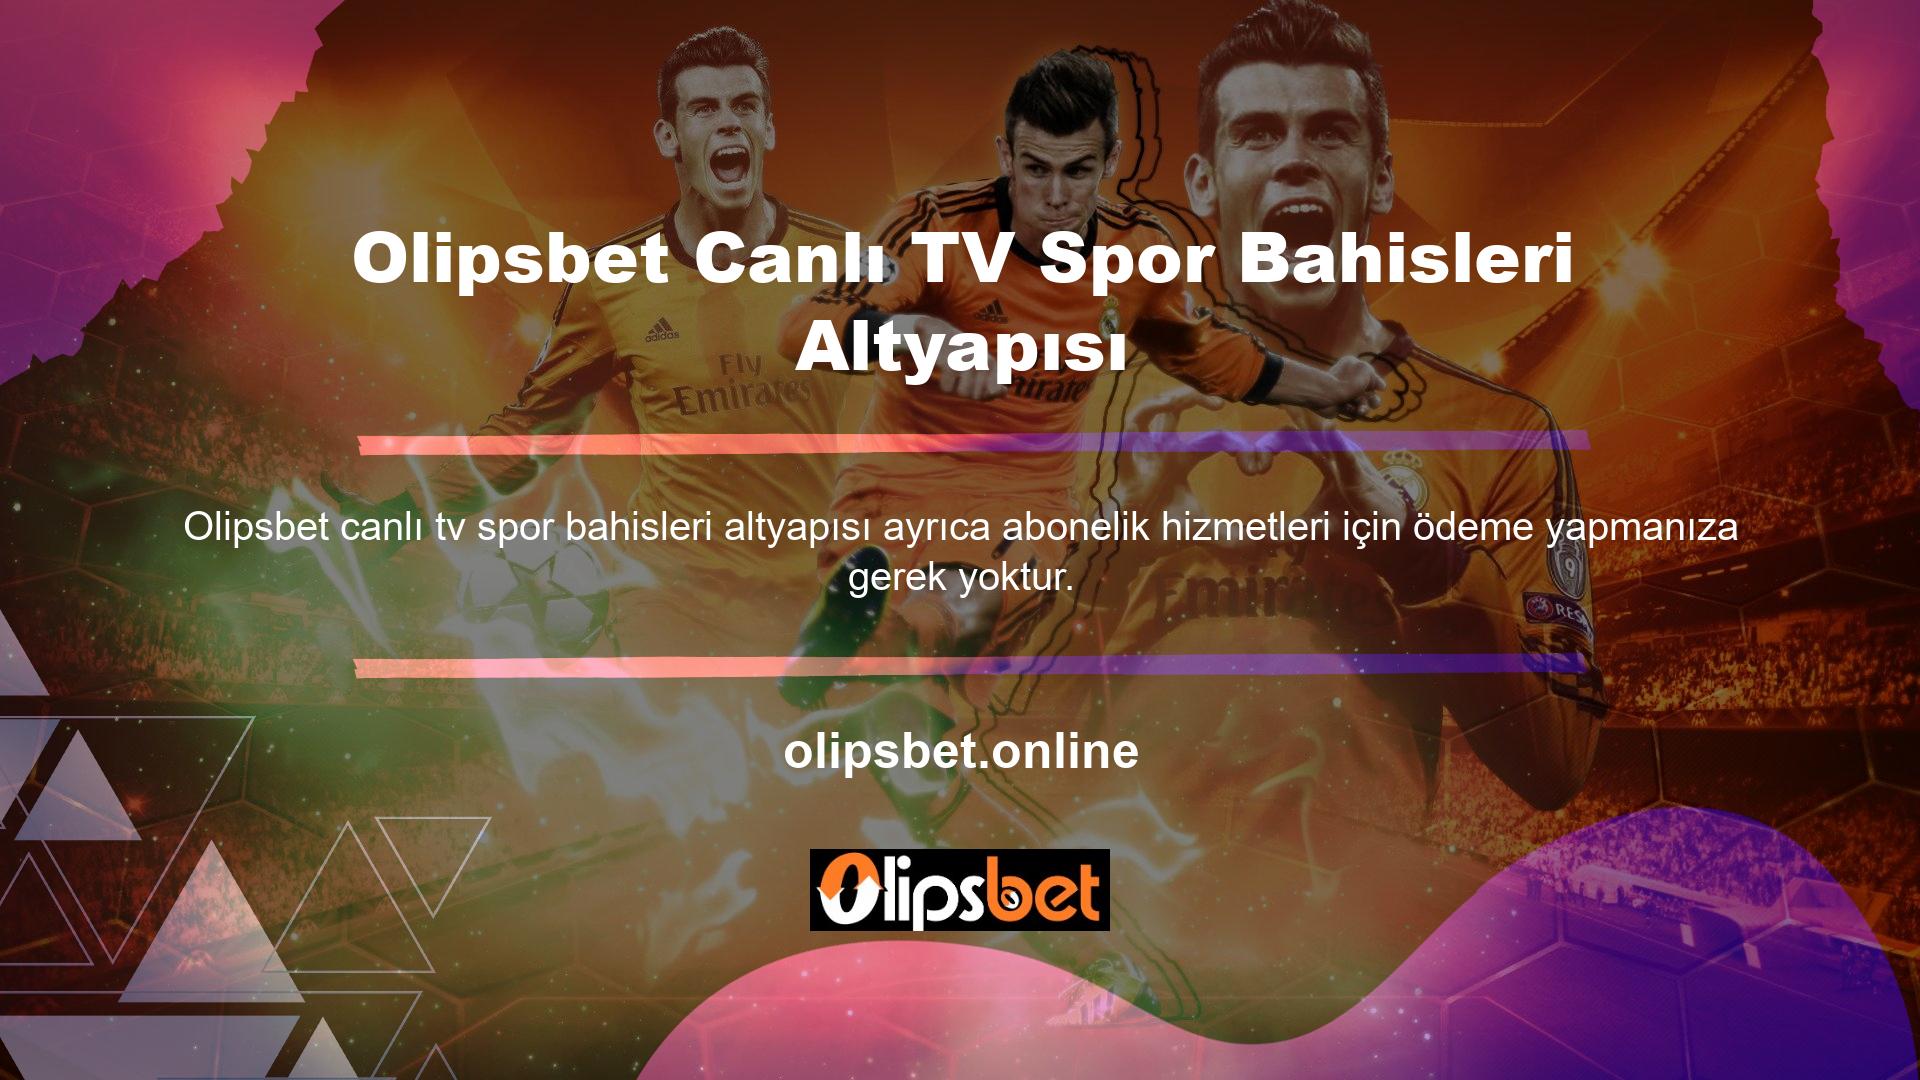 Olipsbet canlı TV spor bahisleri altyapısı ücretsiz bir hizmettir